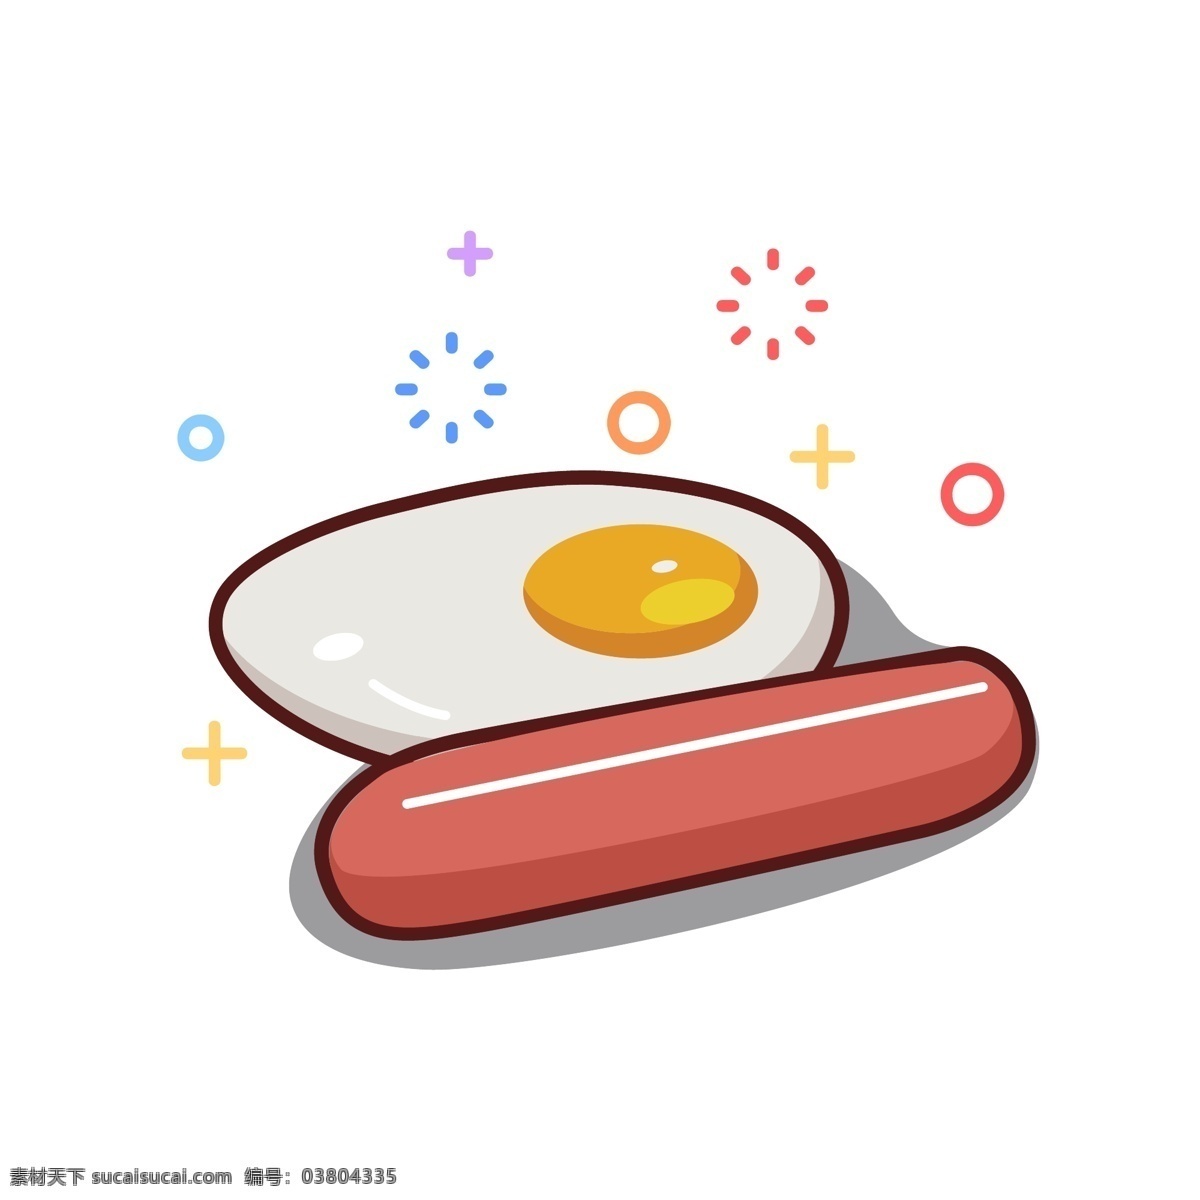 鸡蛋 火腿 原创 插画 早餐 营养 小吃